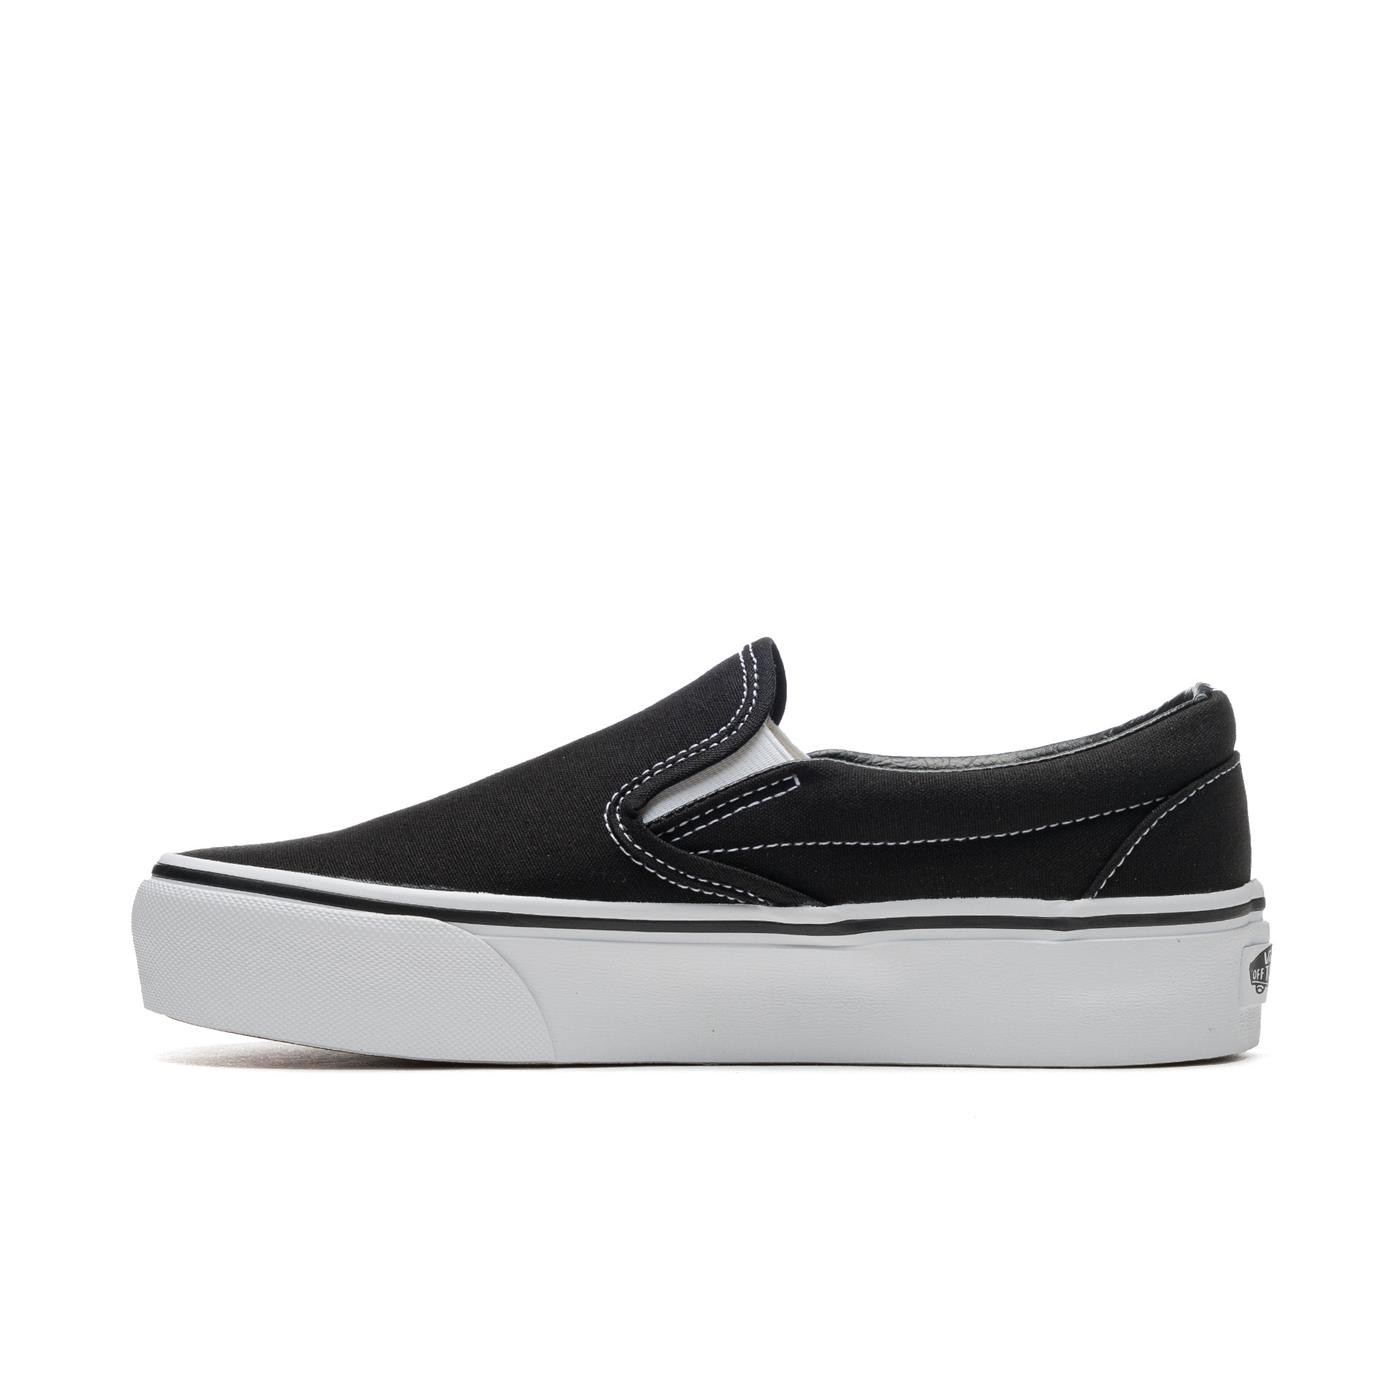 Sneakers VANS Classic Slip-On Platform Black for Unisex | VN00018EBLK ...